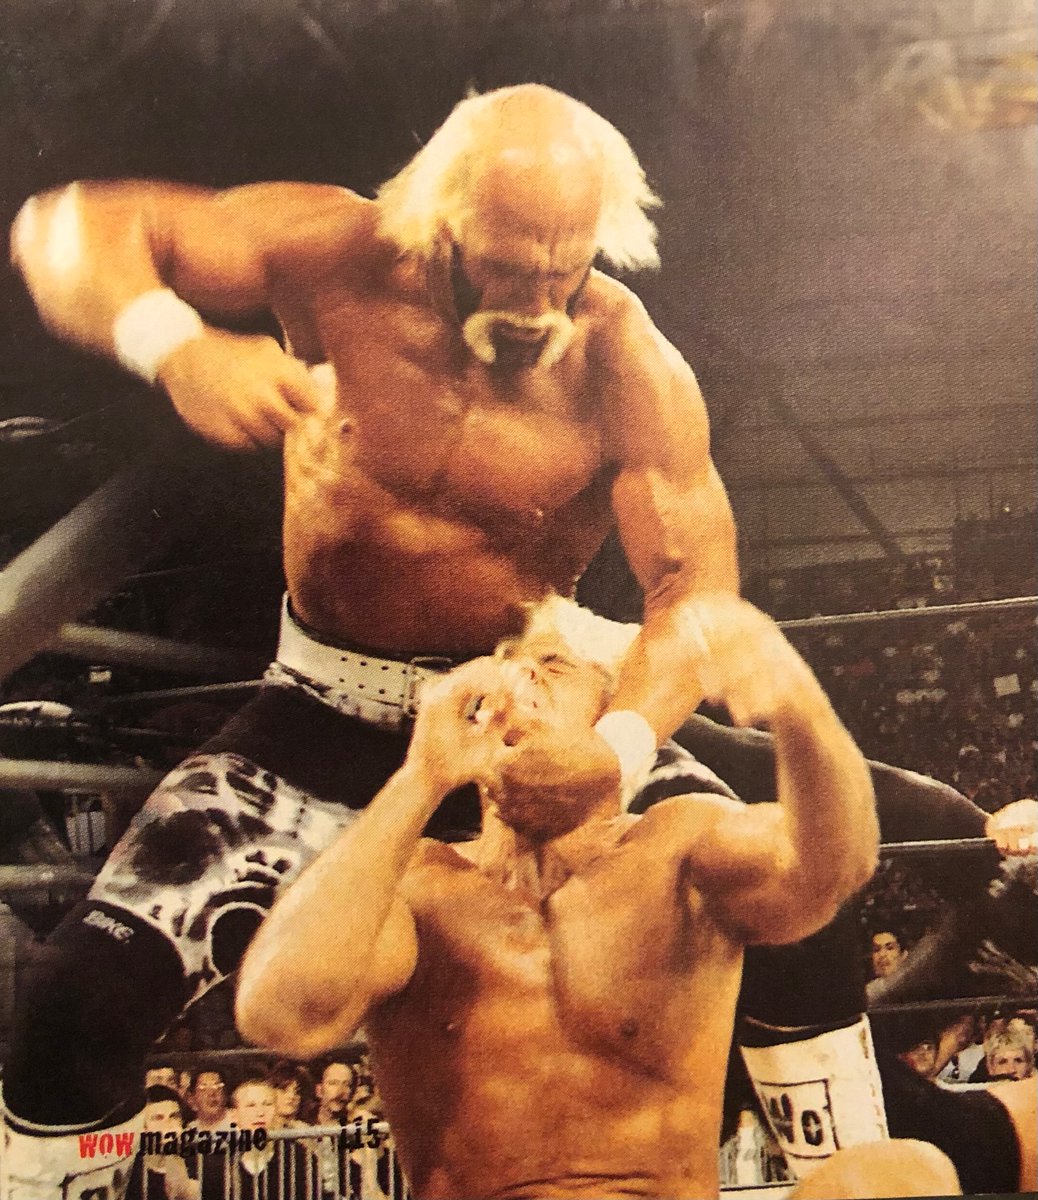 Hulk Hogan vs Ric Flair at Spring Stampede 99, from WOW magazine 3 #hulkhogan #ricflair #hollywoodhogan #nwo #wcw #springstampede #attitudeera #wowmagazine